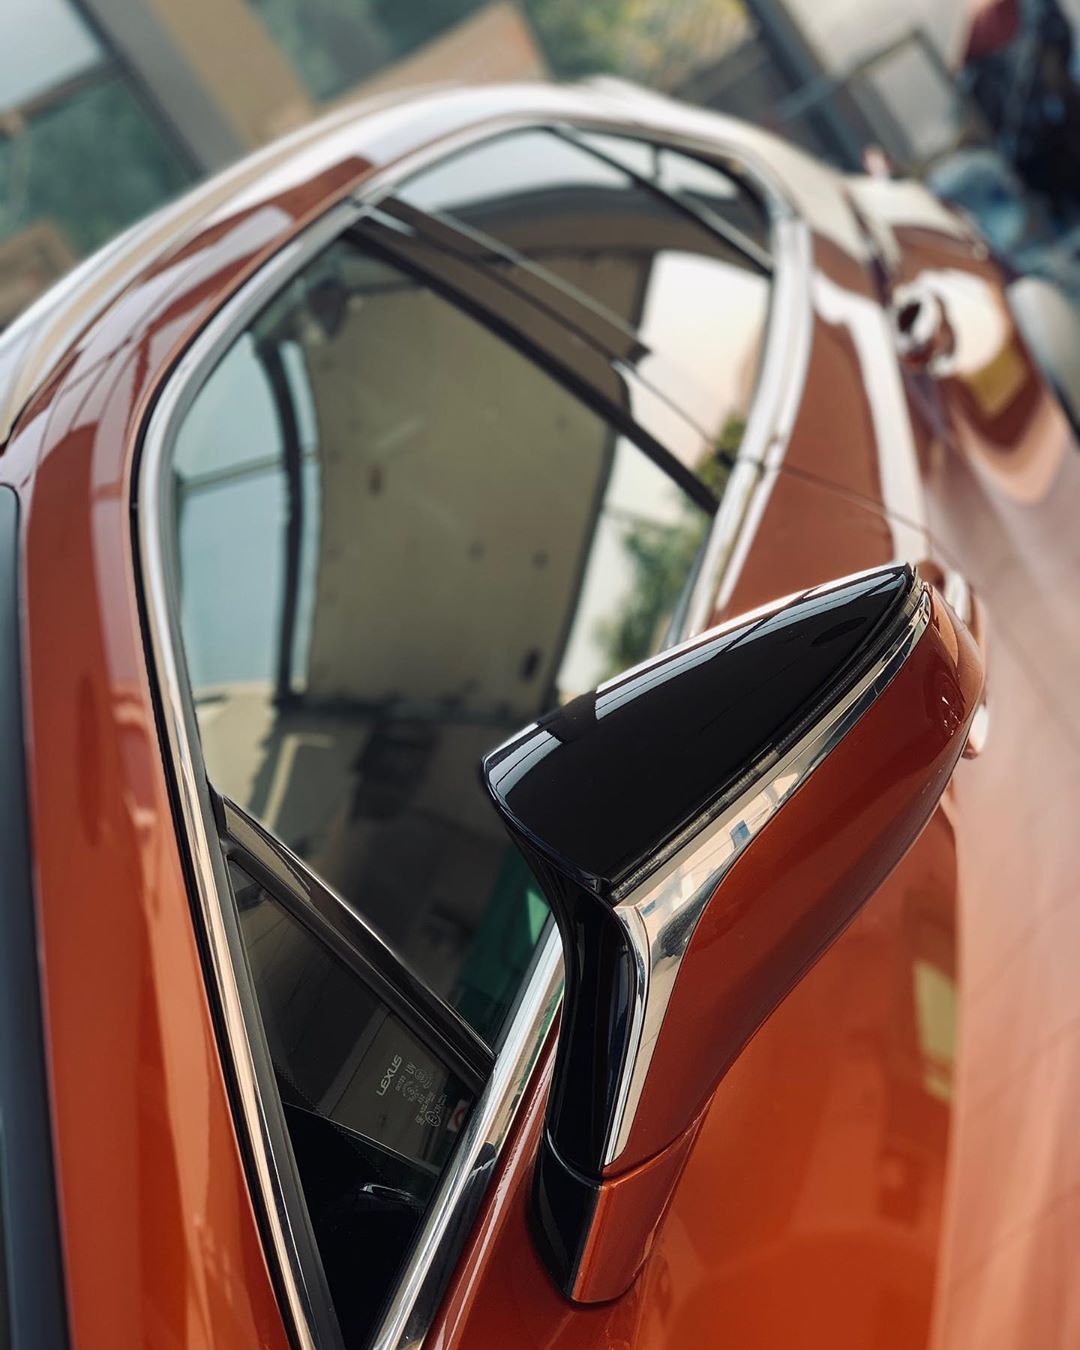 Захист кузова Лексус Lexus антигравійною поліуретановою плівкою | Обклеювання оптики і дзеркал